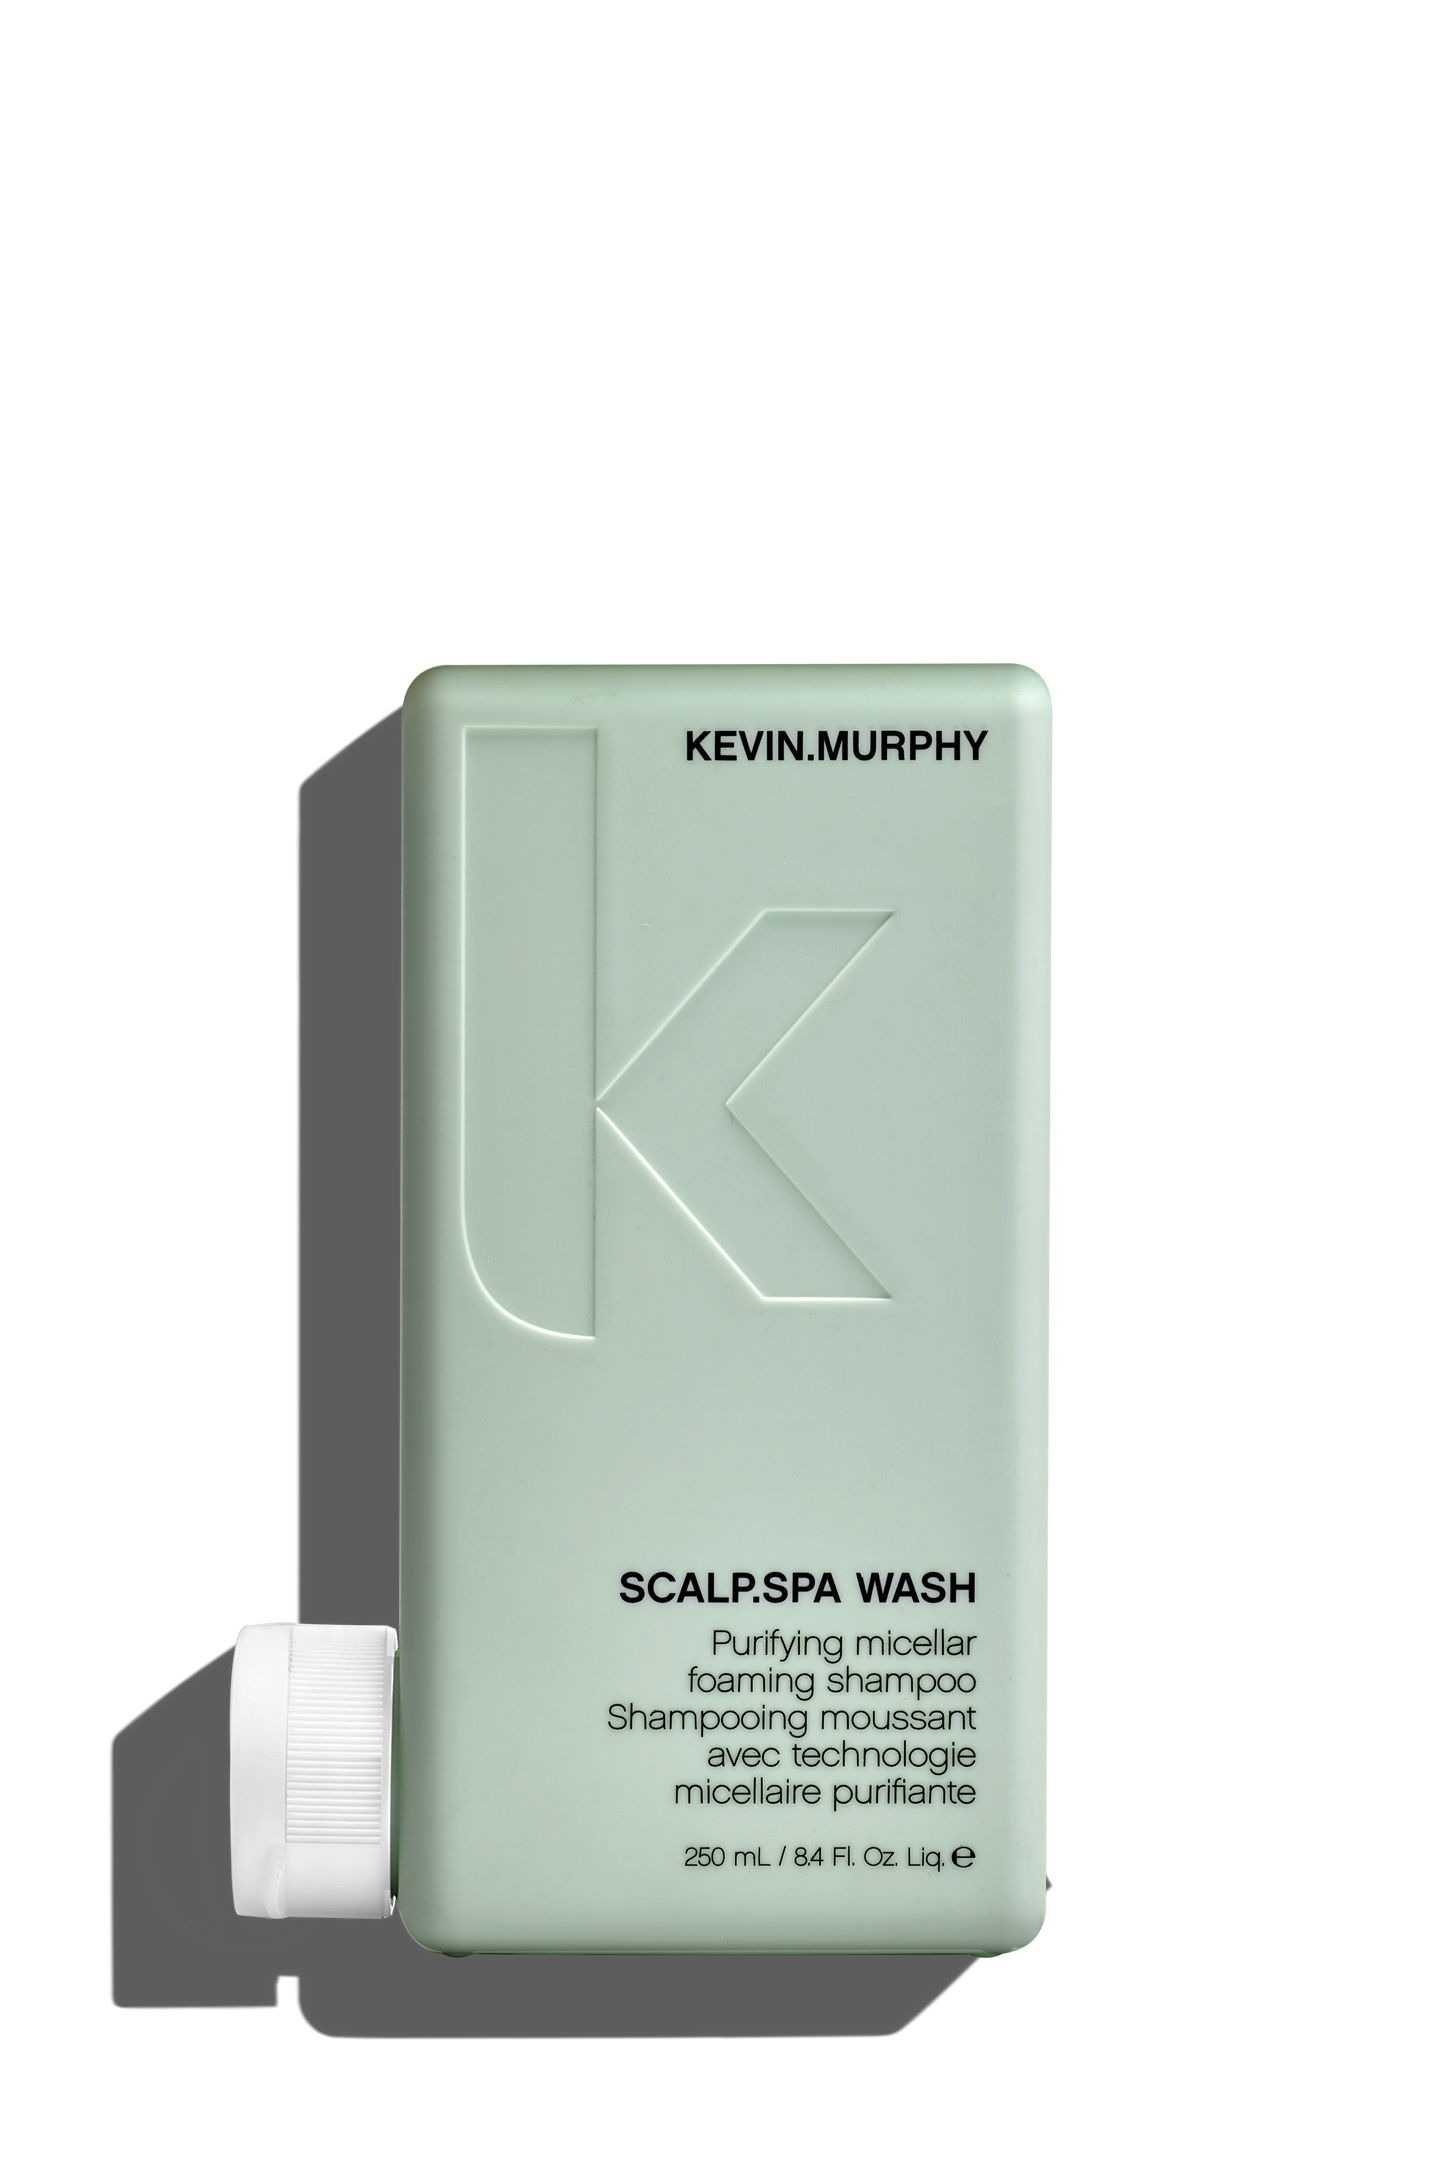 KEVIN.MURPHY Scalp Spa Wash Shampoo